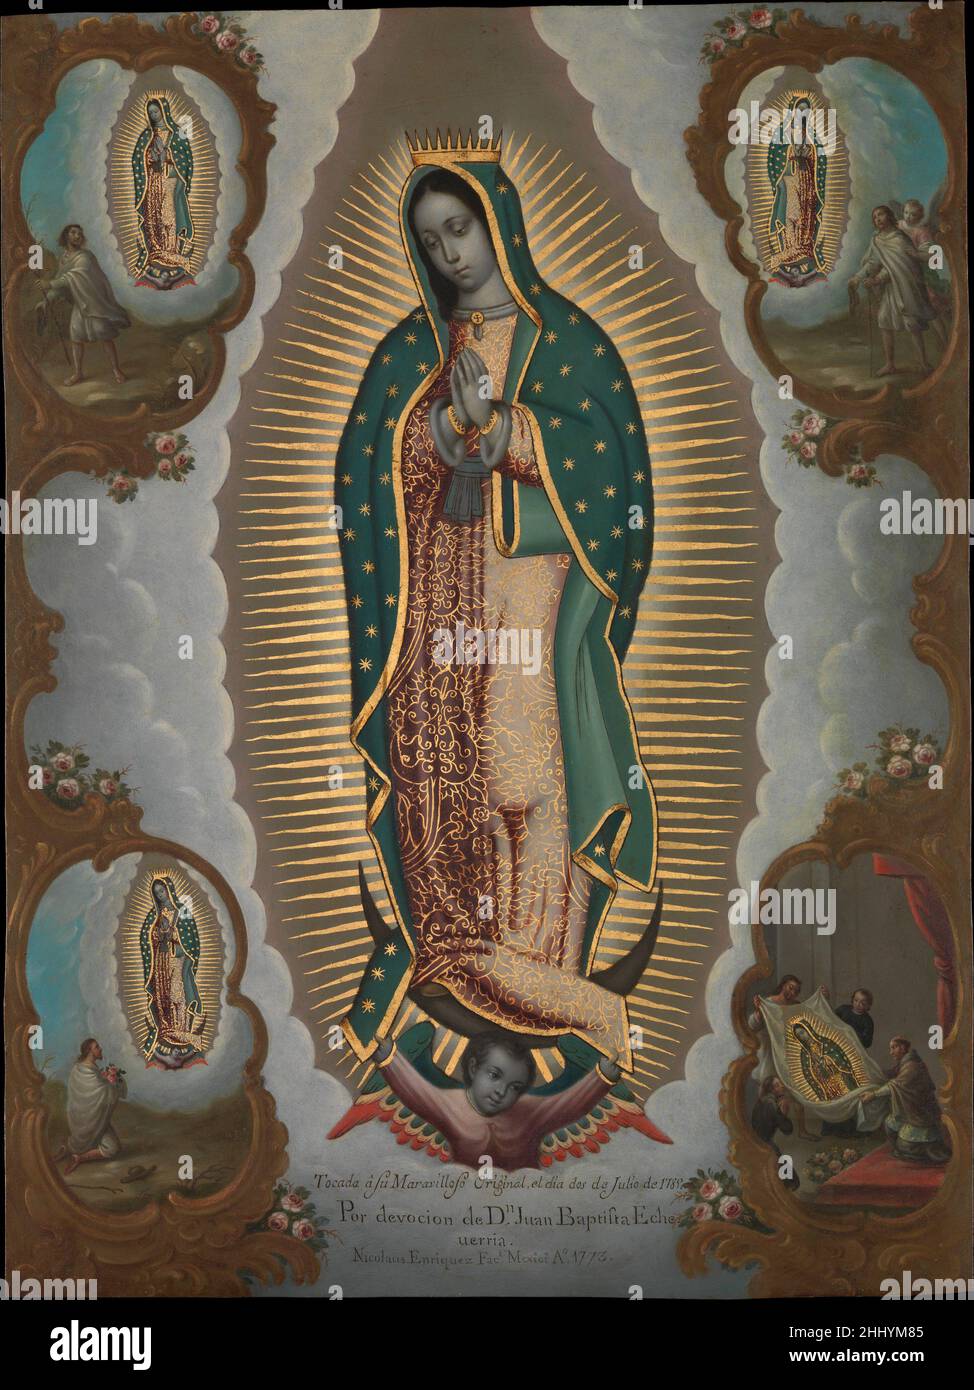 Die Jungfrau von Guadalupe mit den vier Erscheinungen 1773 Nicolás Enríquez Mexikanisch als Nicolás Enríquez 1773 diese Kopie der Jungfrau von Guadalupe malte, war sie das am meisten verehrte heilige Bild in Neuspanien. Hier ist das wundersame Bild von vier Szenen umgeben, die seinen göttlichen Ursprung bezeugen. Sie zeichnen die drei Auftritte der Jungfrau vor dem Indianer Juan Diego in Tepeyac, nahe Mexiko-Stadt, auf und gipfeln in der Enthüllung ihres Bildes, das auf seinem Mantel aufgedruckt ist. Eine Inschrift zeigt, dass diese Kopie durch Kontakt mit dem Original im Jahr 1789 geheiligt wurde, sechzehn Jahre nachdem sie gemalt wurde Stockfoto